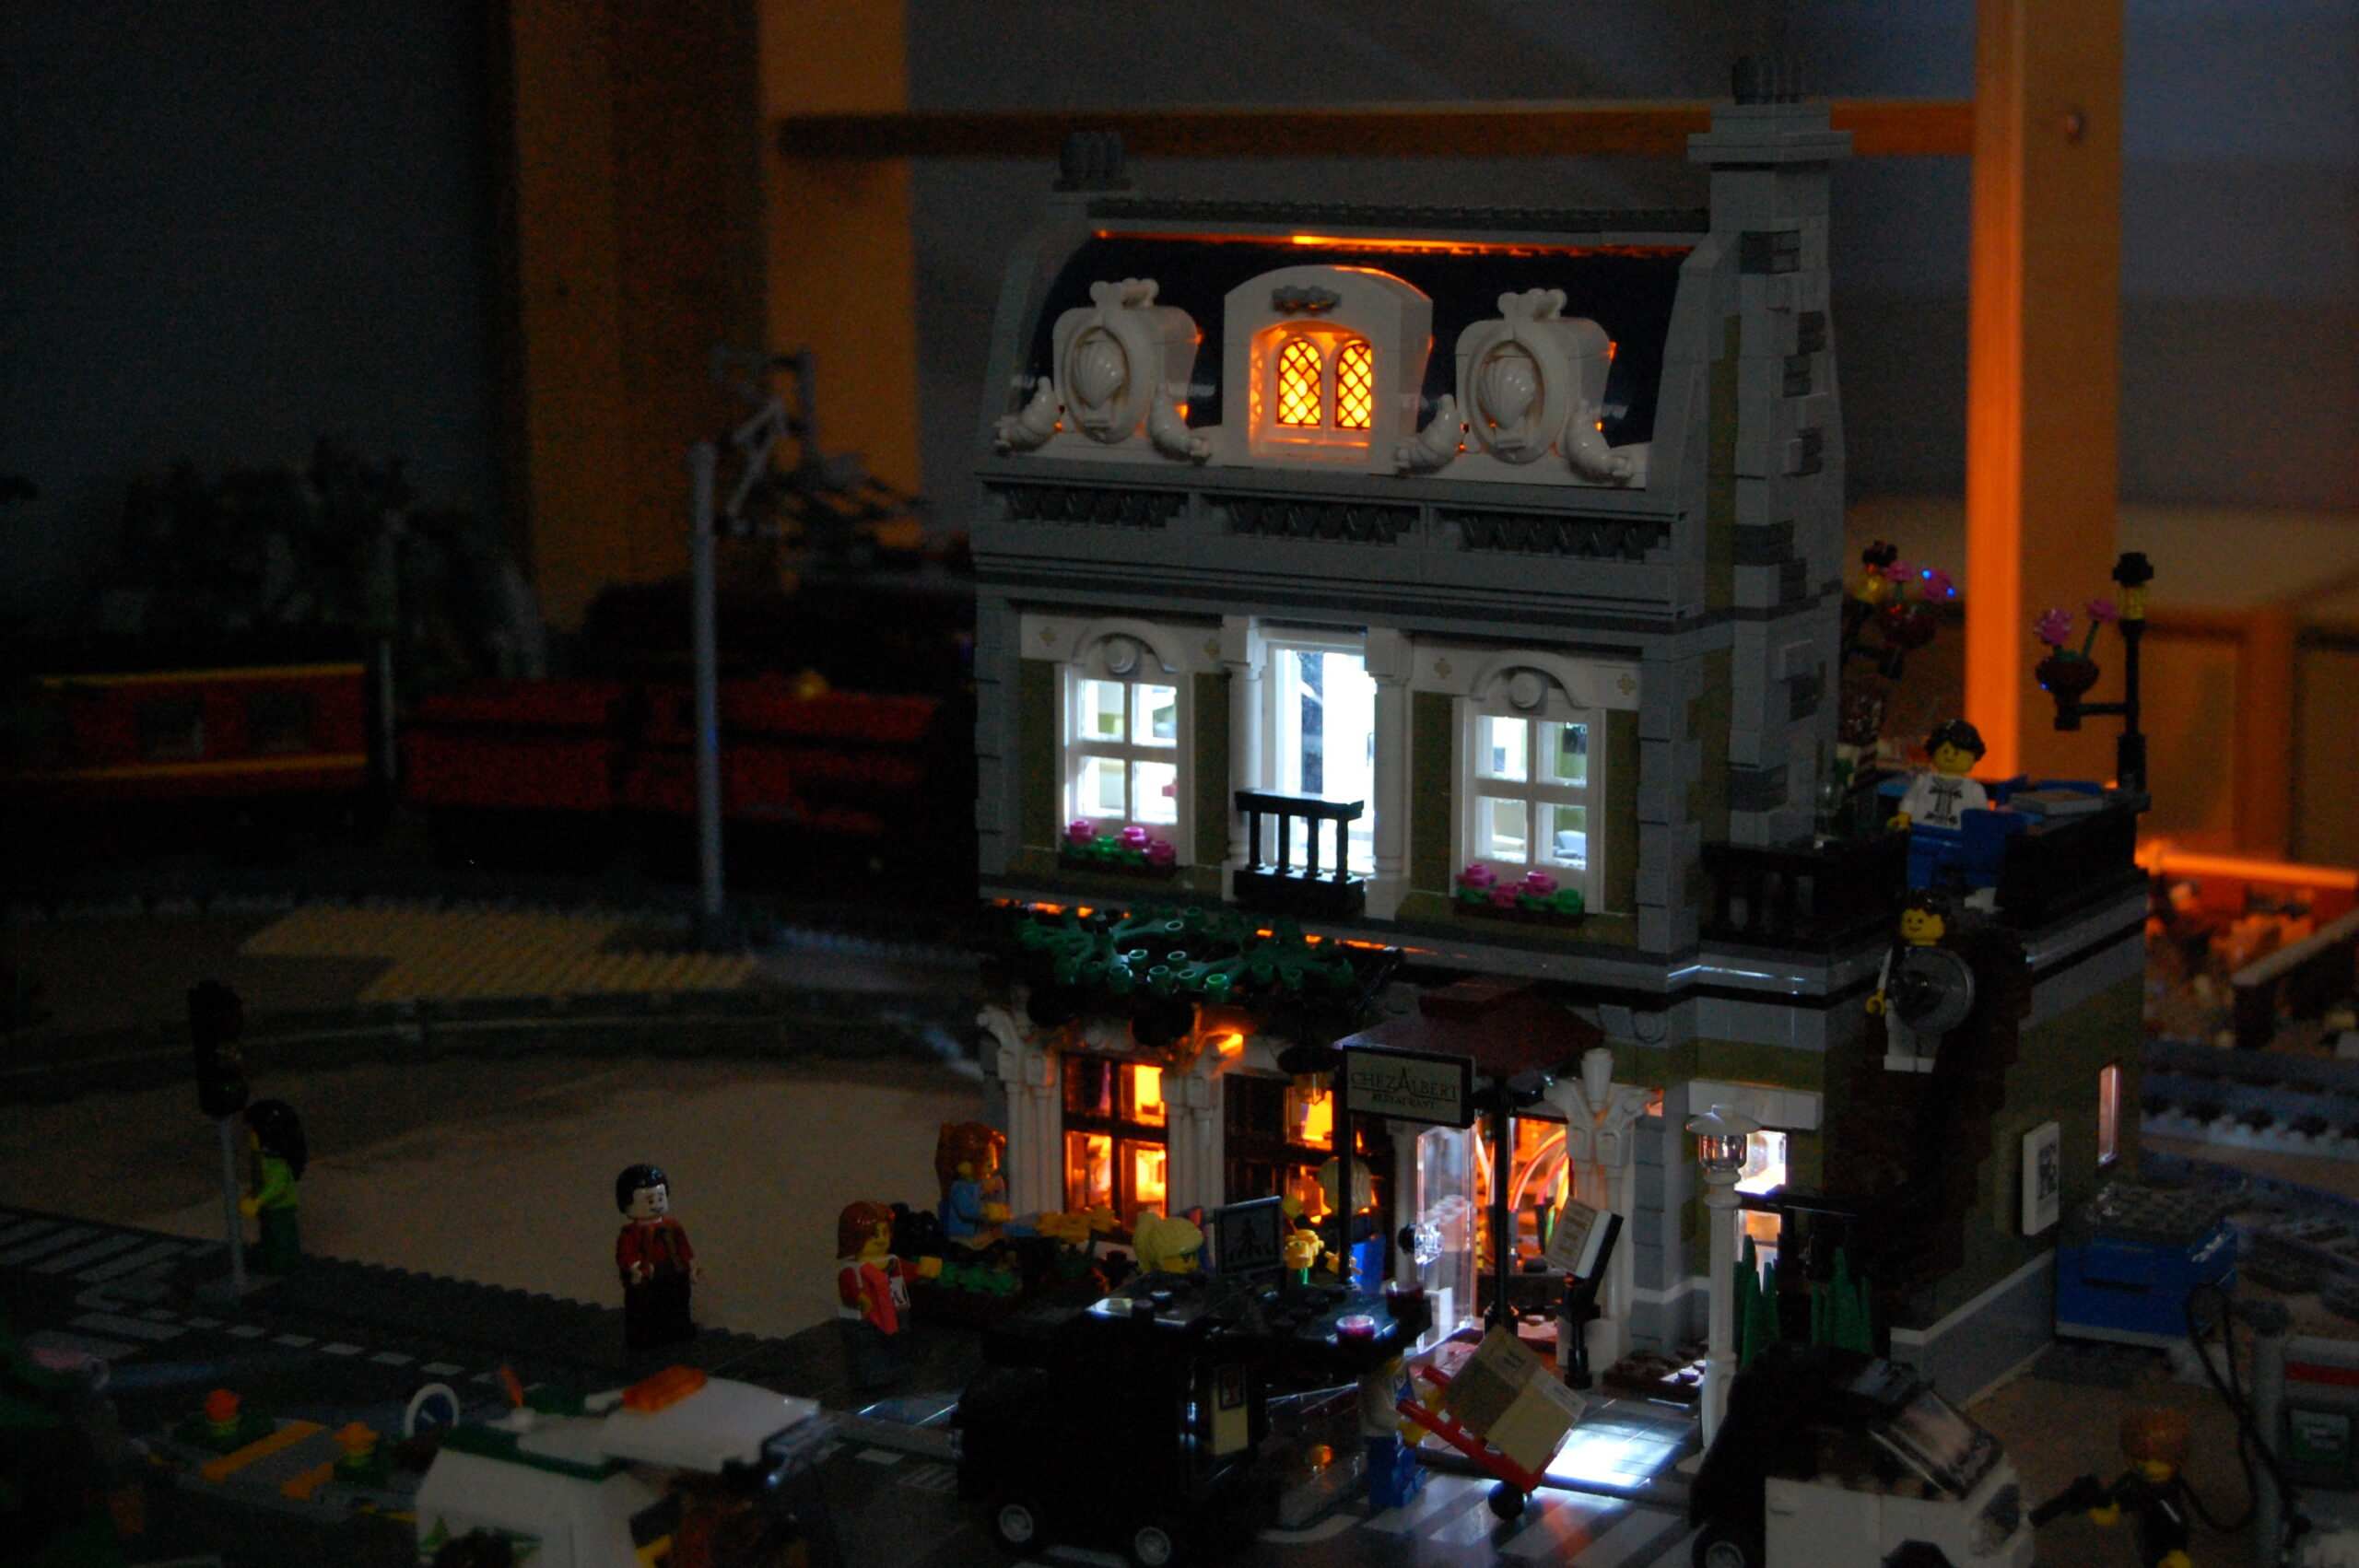 LEGO models shed light on alive: First part